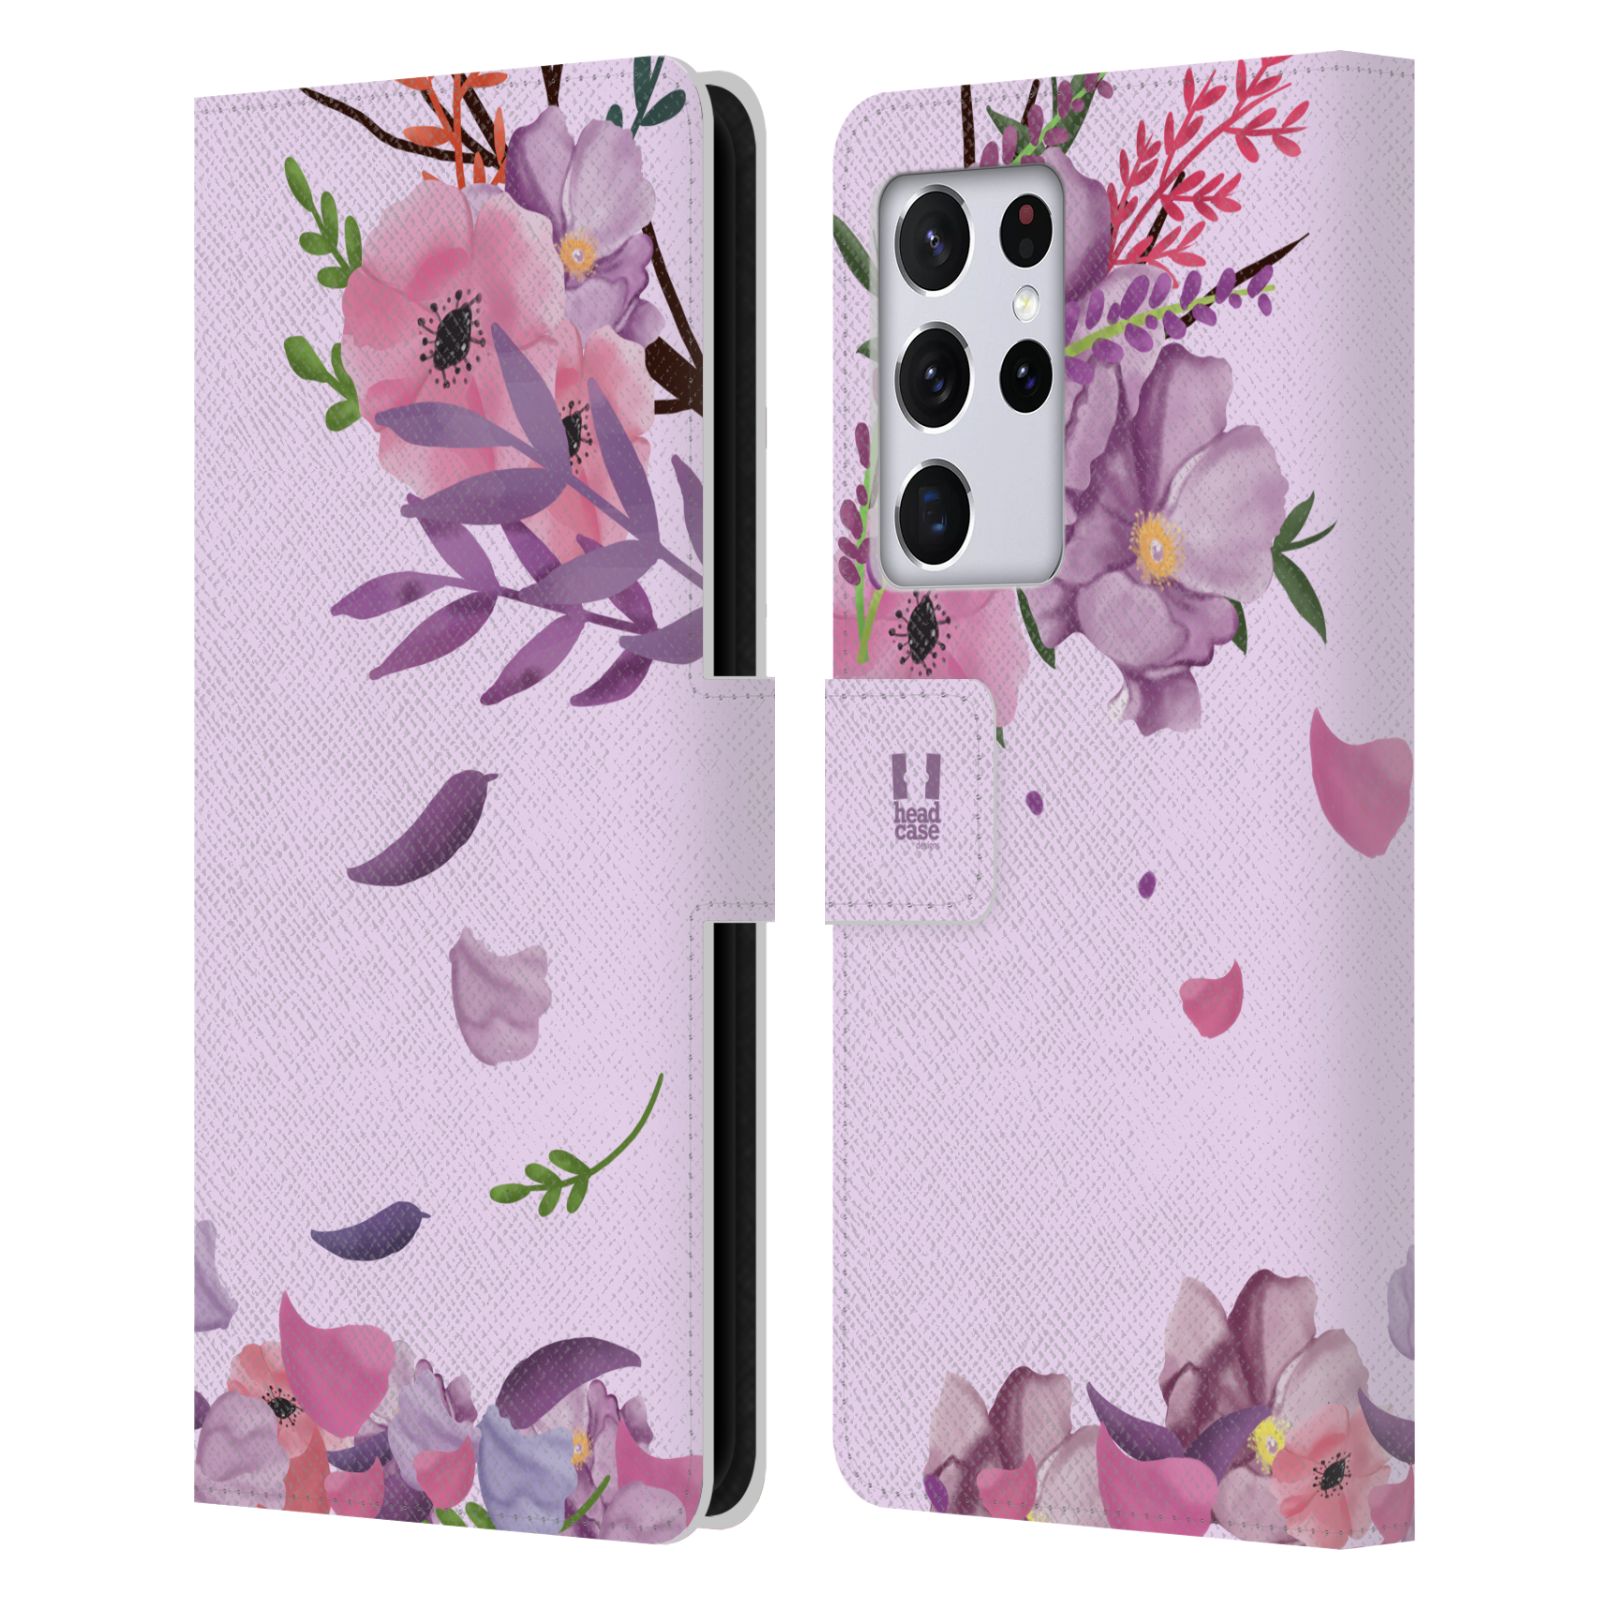 Pouzdro na mobil Samsung Galaxy S21 ULTRA 5G  - HEAD CASE - Rozkvetlé růže a listy růžová